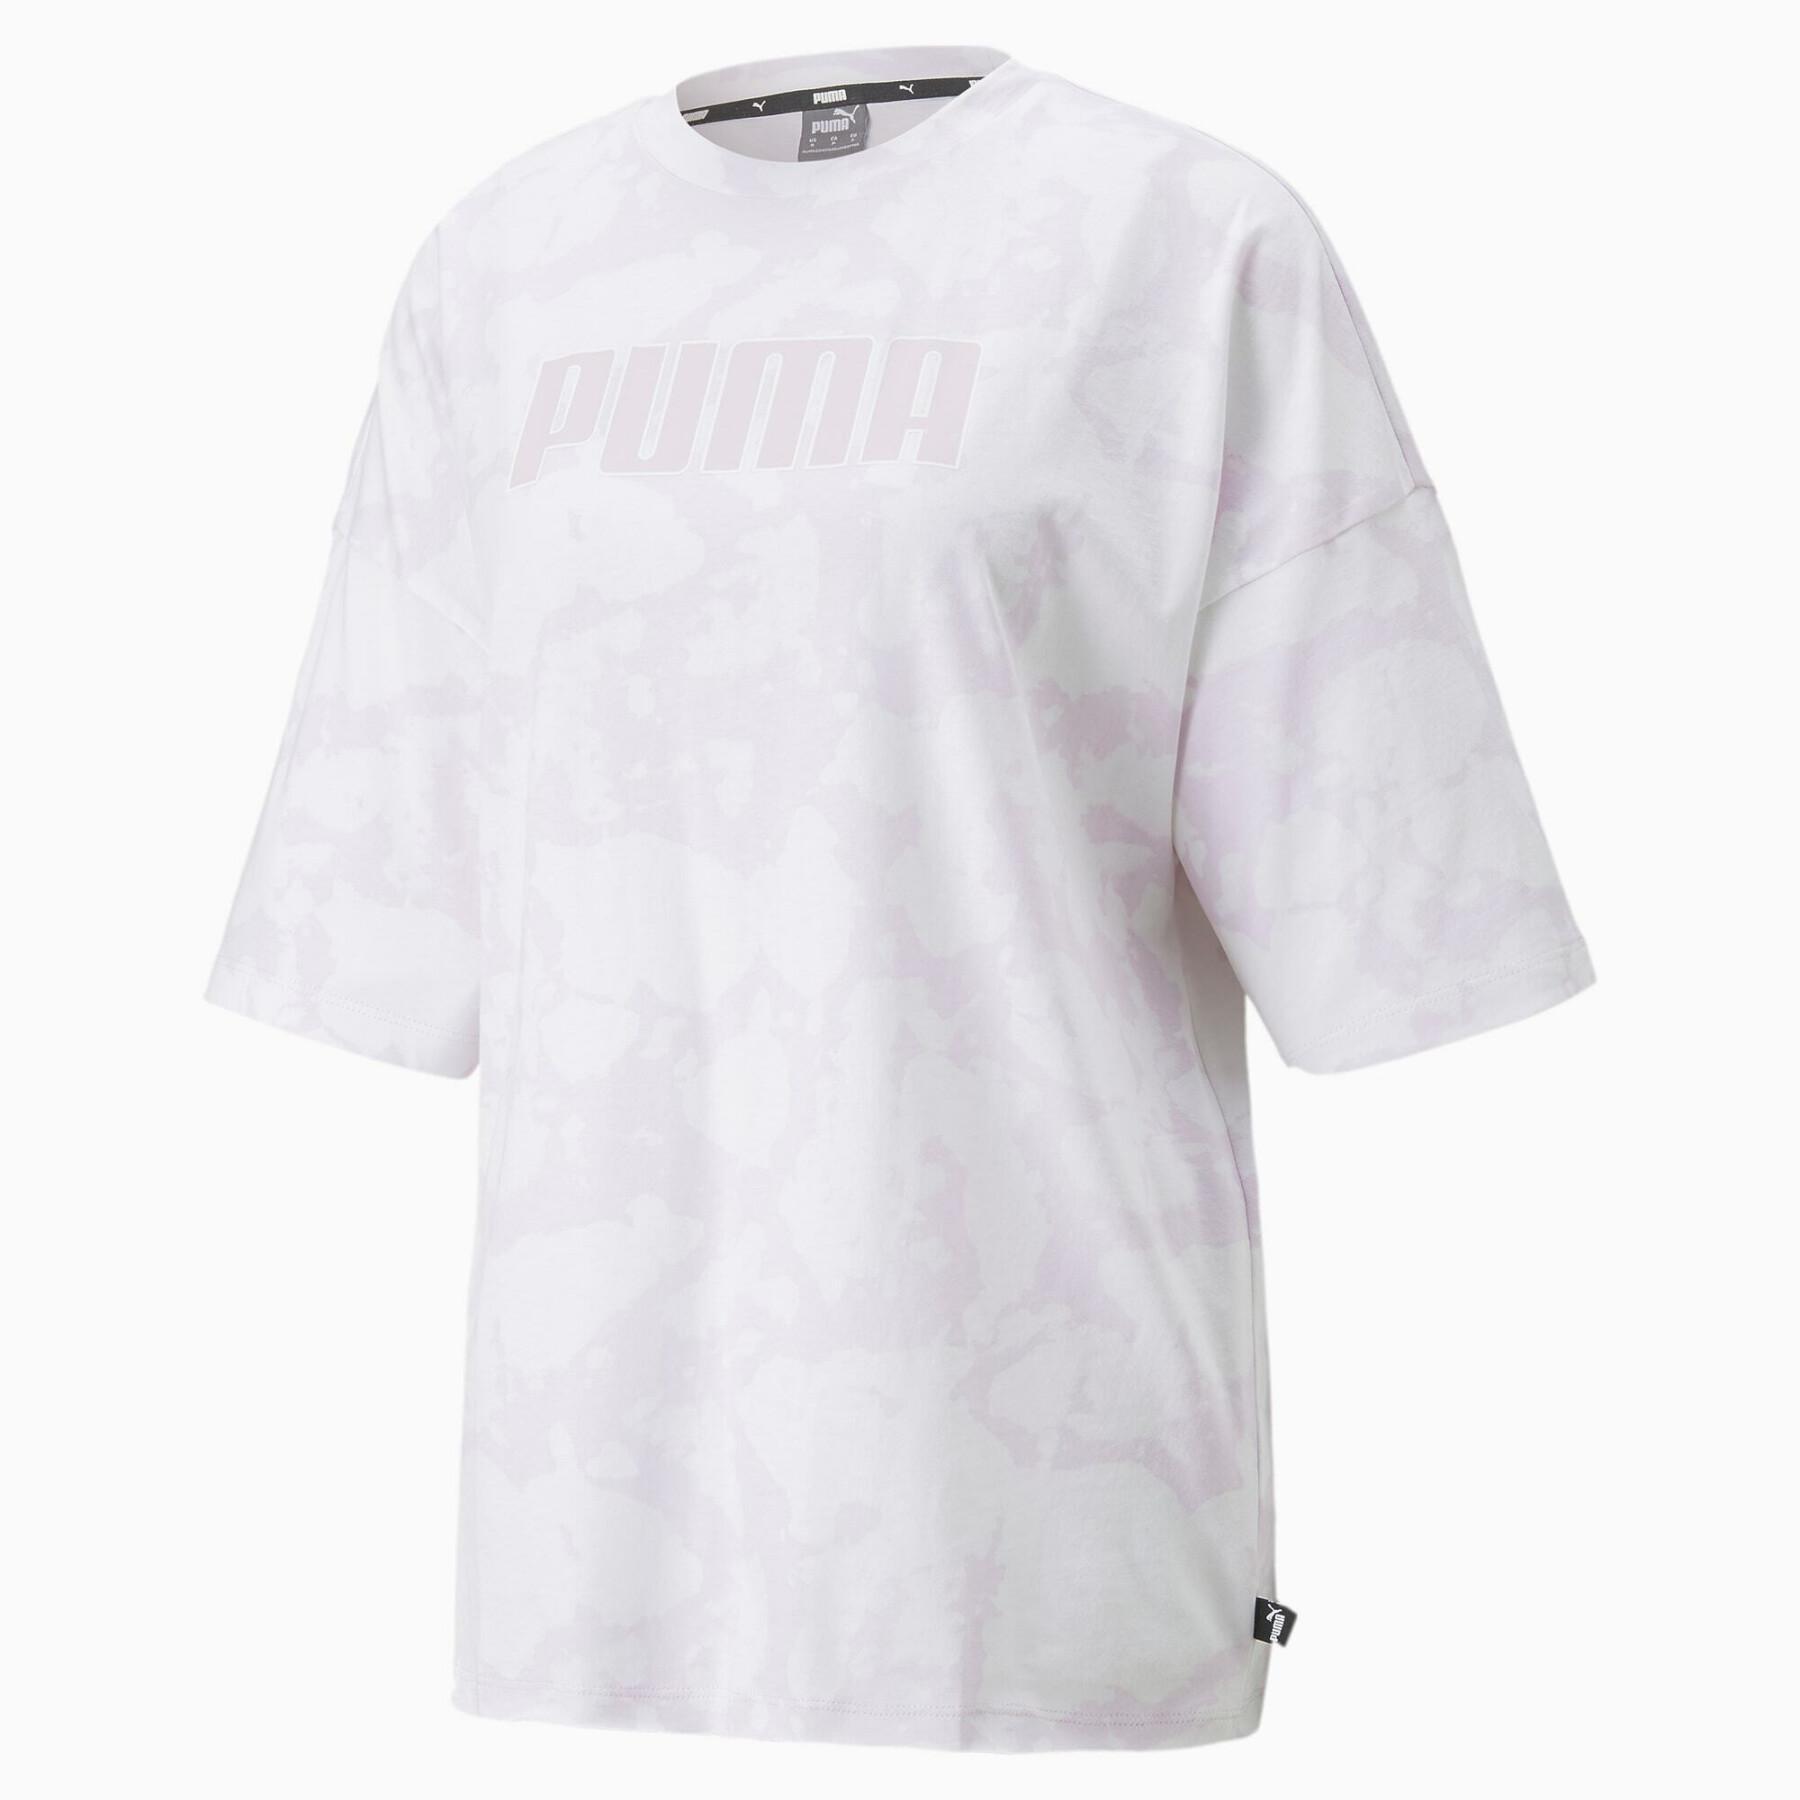 Women's T-shirt Puma Summer Graphic Aop